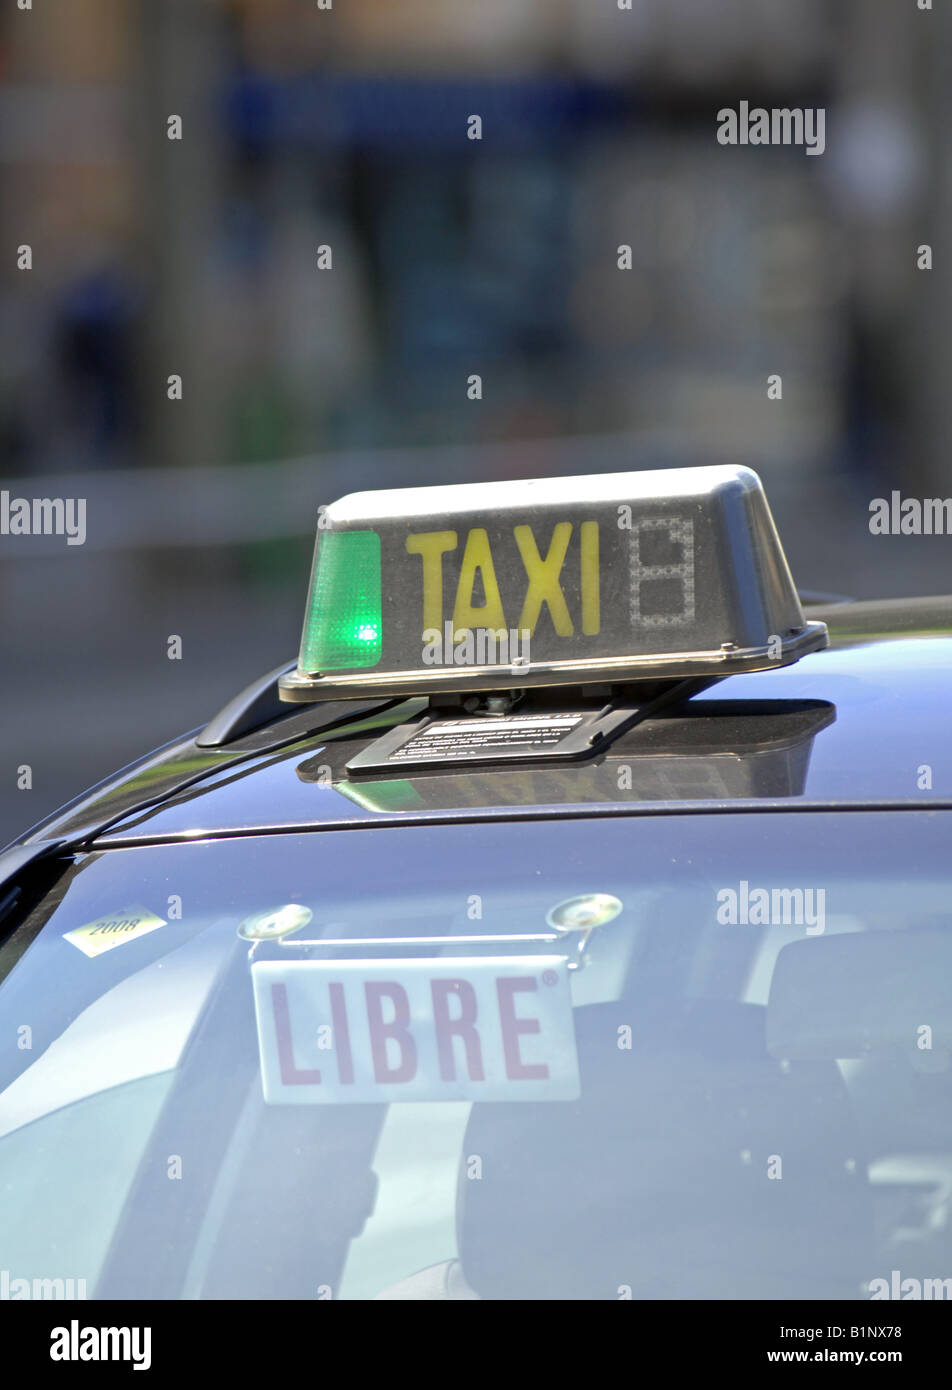 Taxi cab, Espagne Banque D'Images